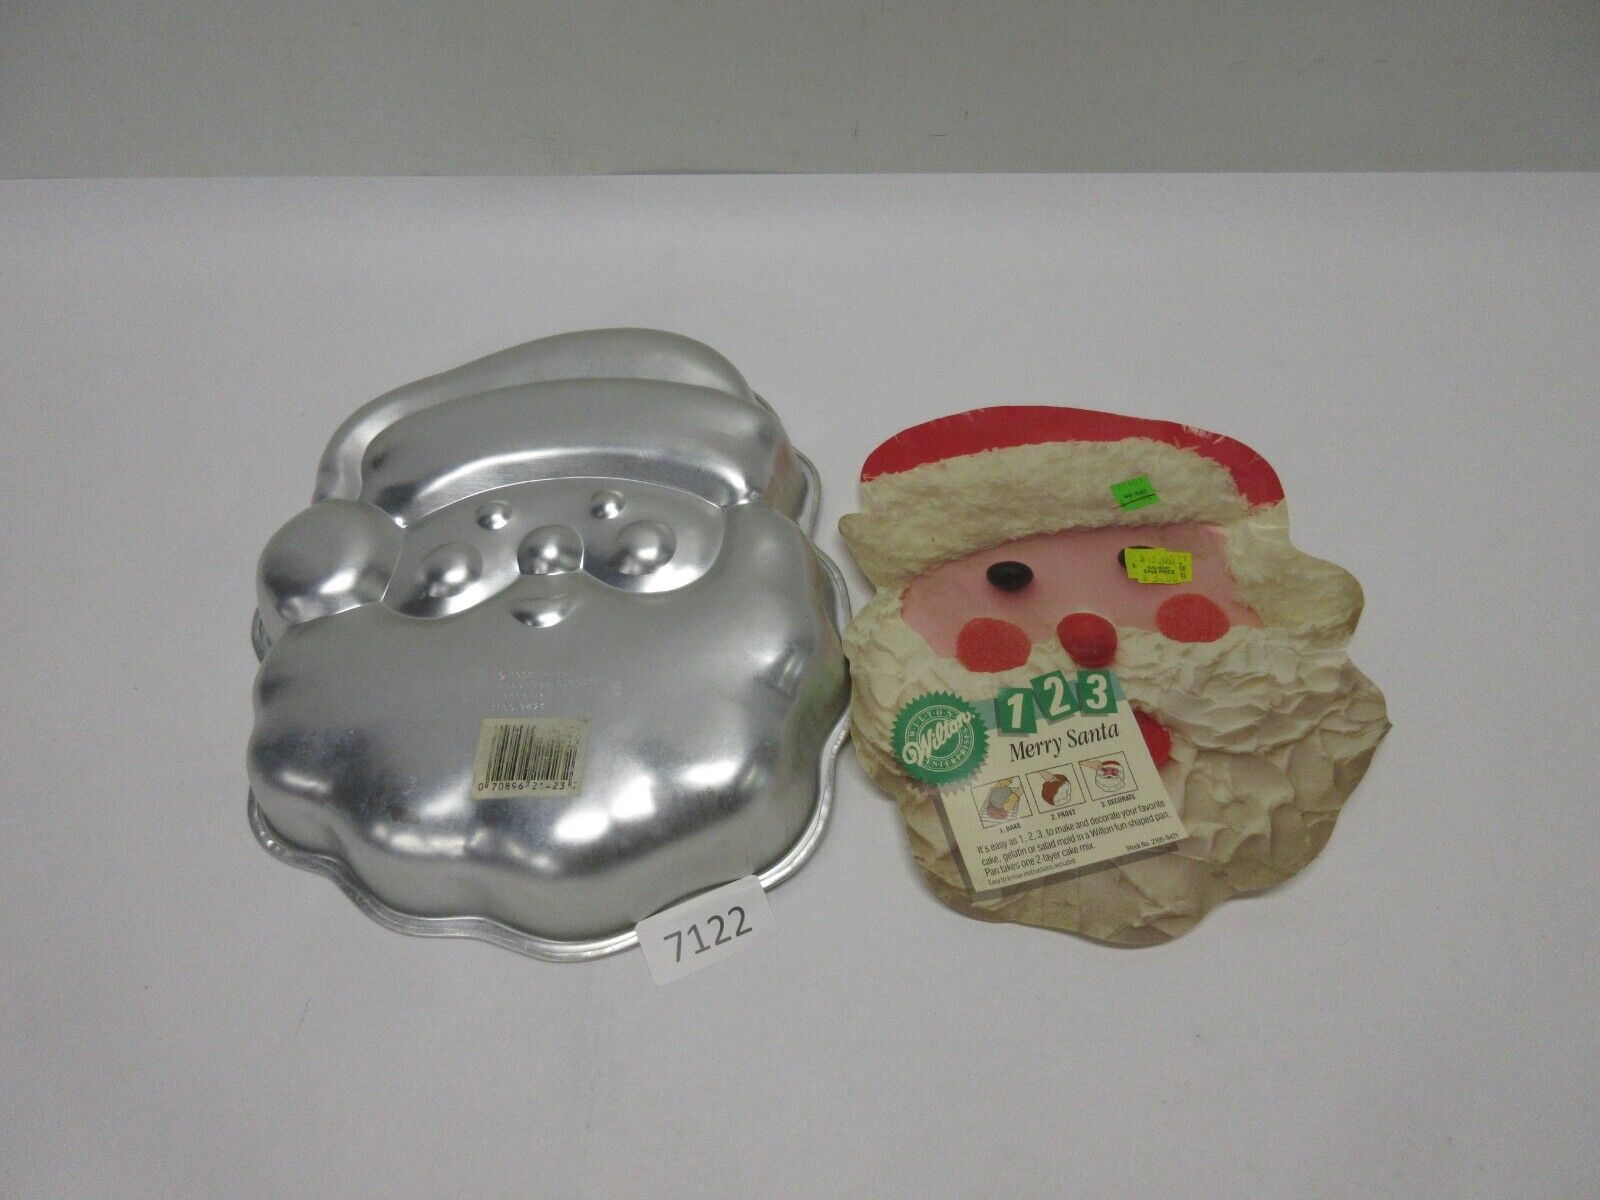 New Vintage 1991 Wilton Merry Santa Claus Cake Pan Mold 2105-9421 w/ Insert